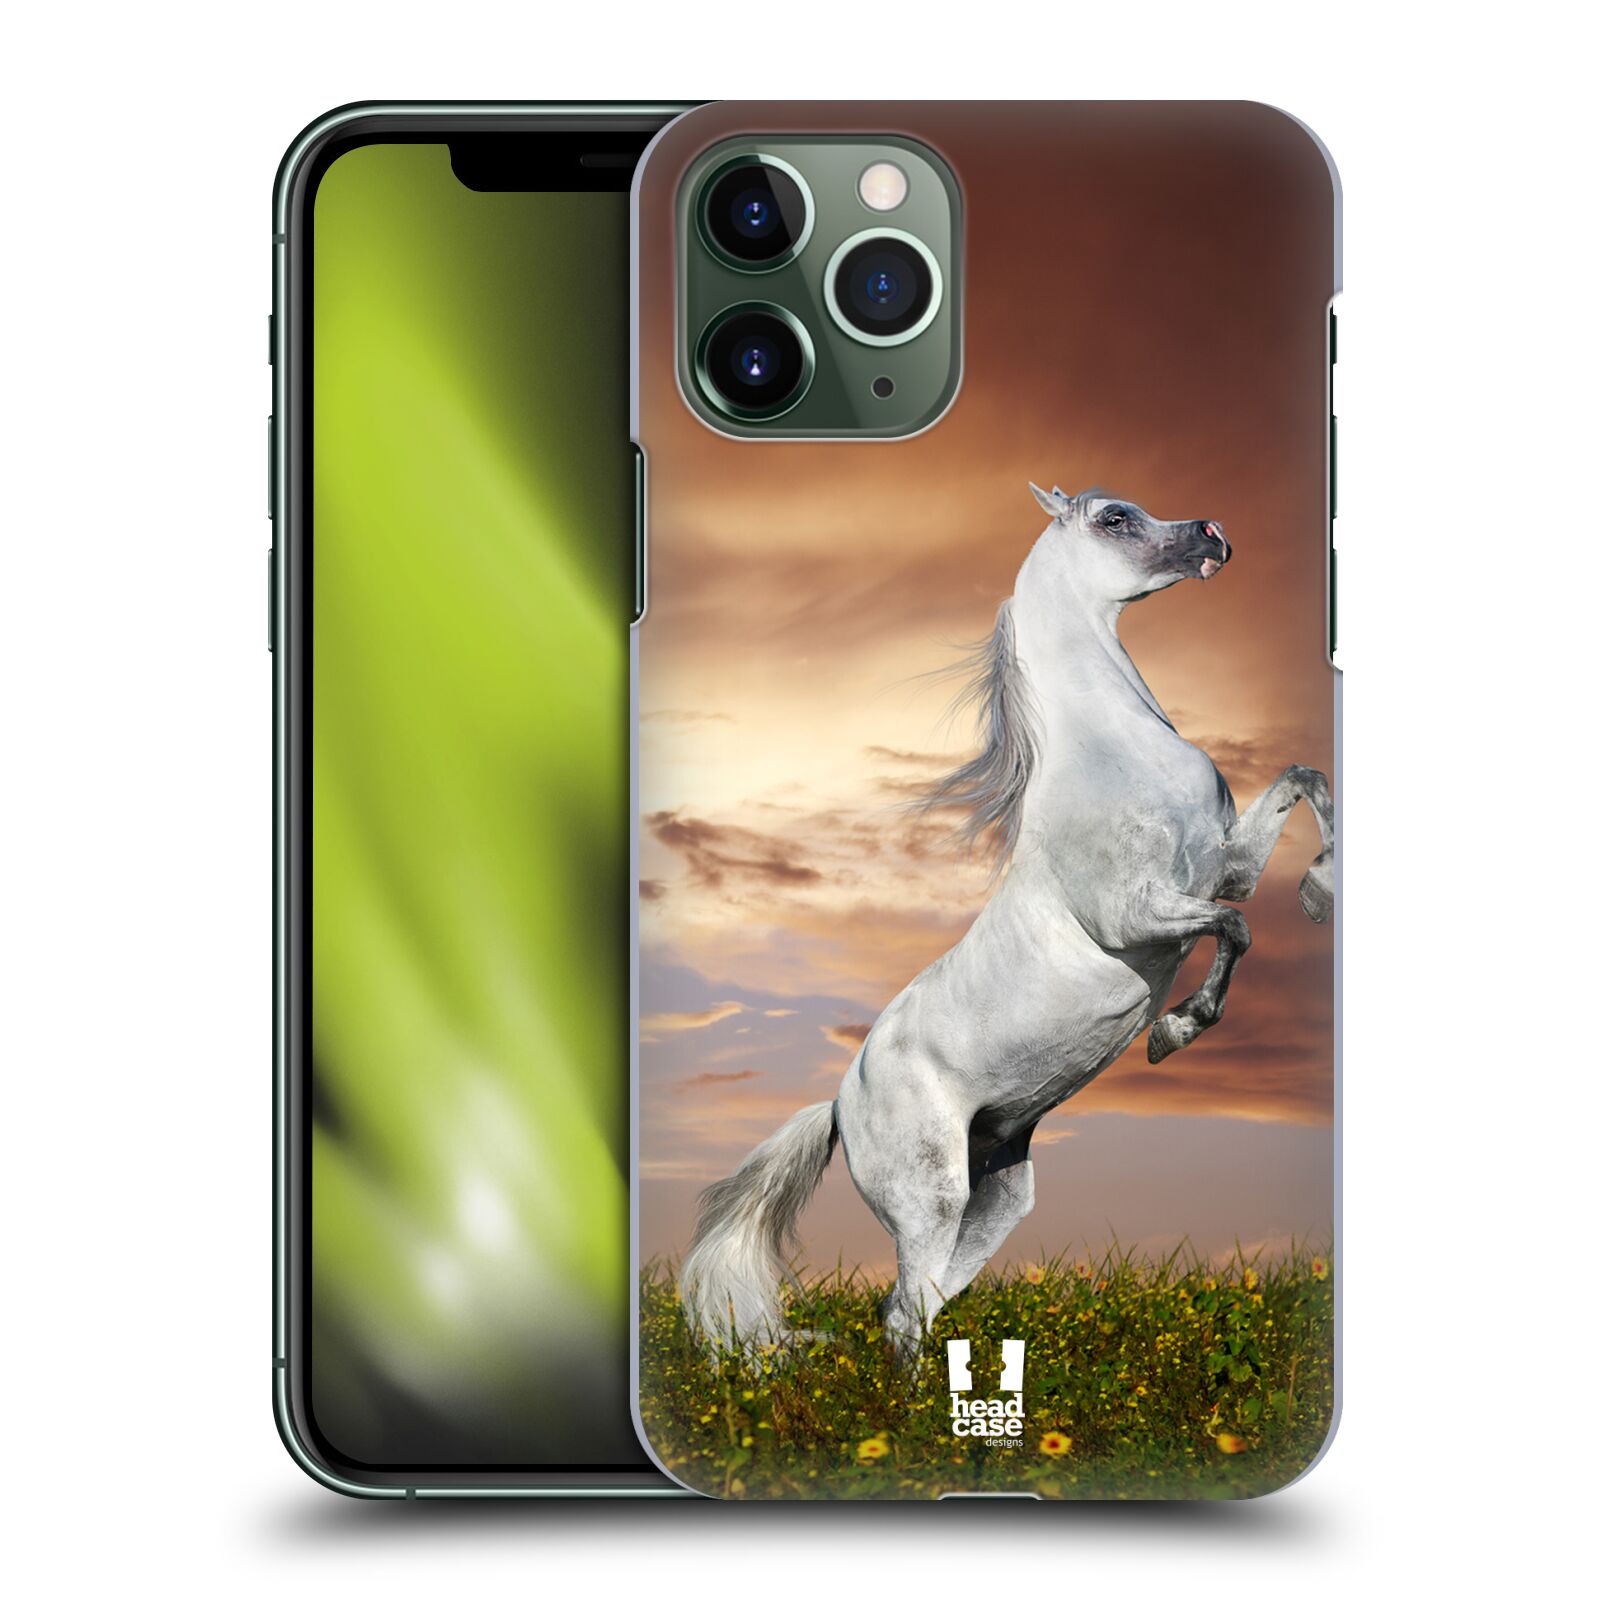 Pouzdro na mobil Apple Iphone 11 PRO - HEAD CASE - vzor Divočina, Divoký život a zvířata foto DIVOKÝ KŮŇ MUSTANG BÍLÁ